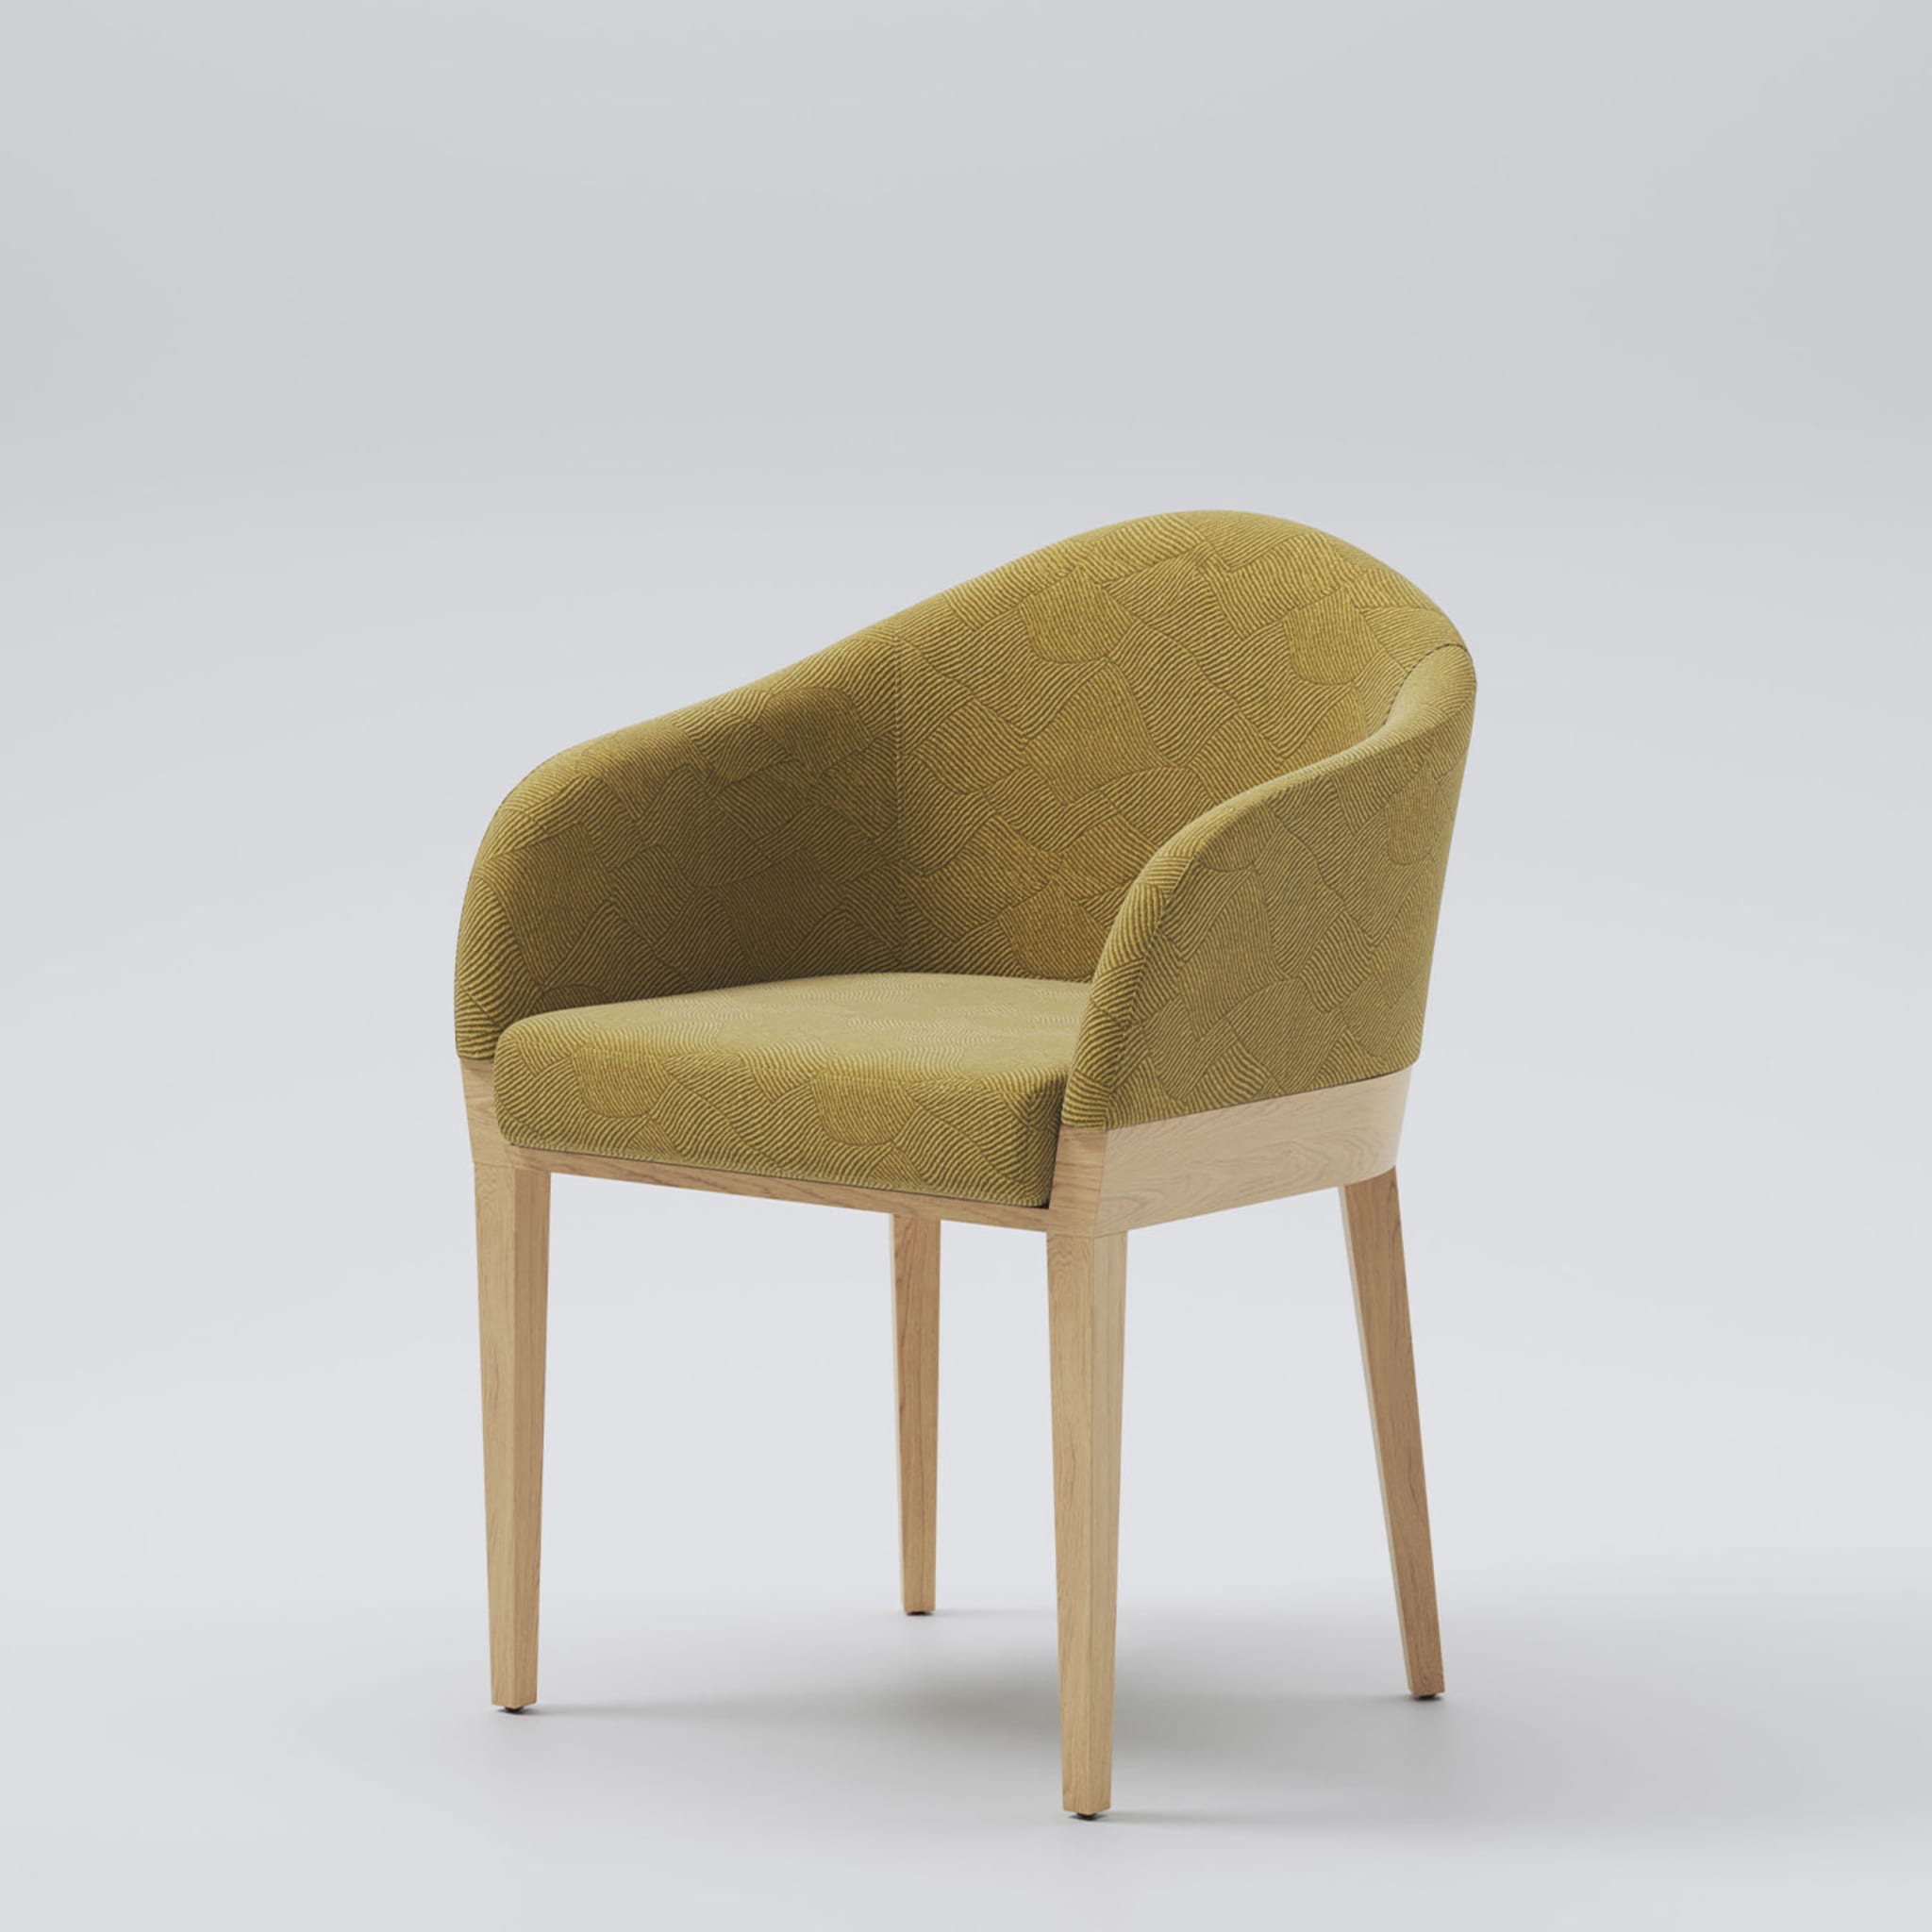 Agata Chair - Alternative view 1